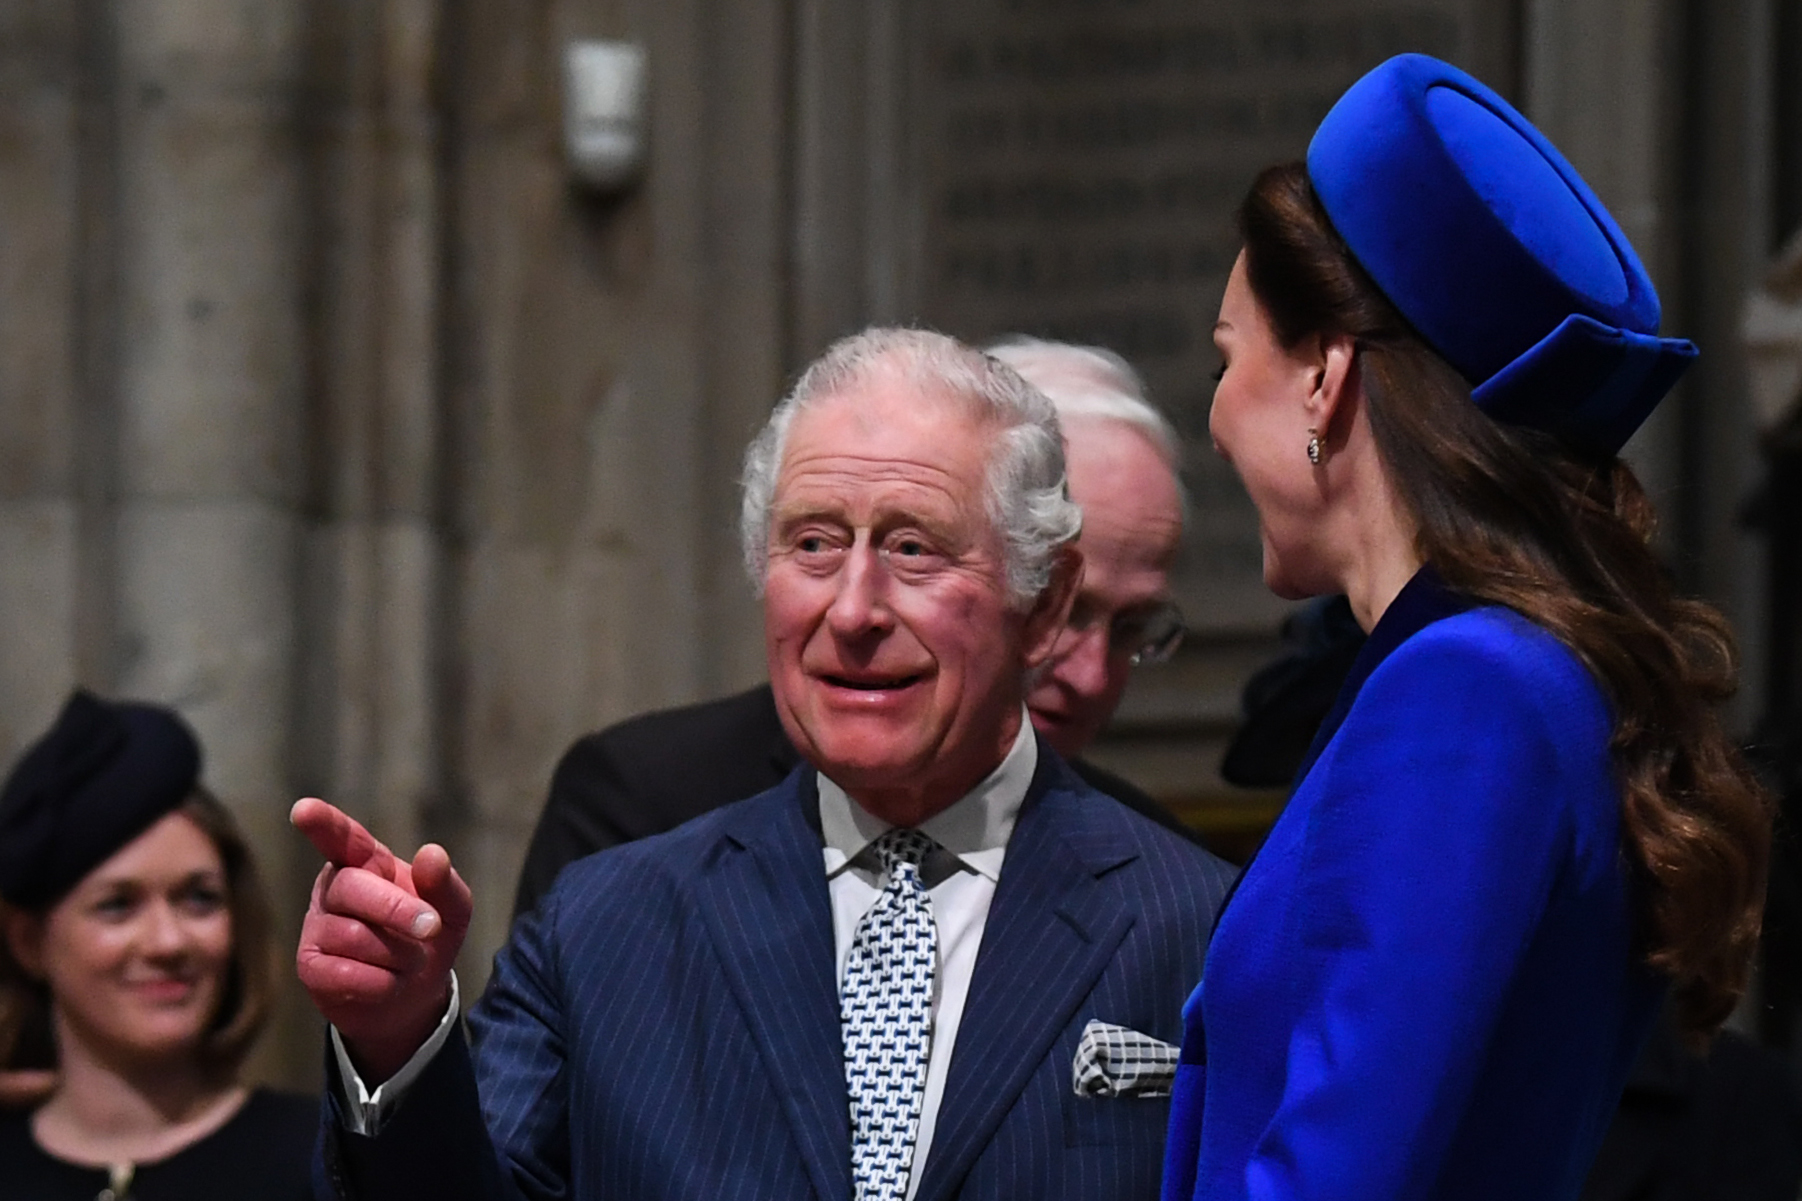 Le roi Charles III et la princesse Catherine lors de la cérémonie de service du Jour du Commonwealth à l'abbaye de Westminster le 14 mars 2022 à Londres, Angleterre | Source : Getty Images